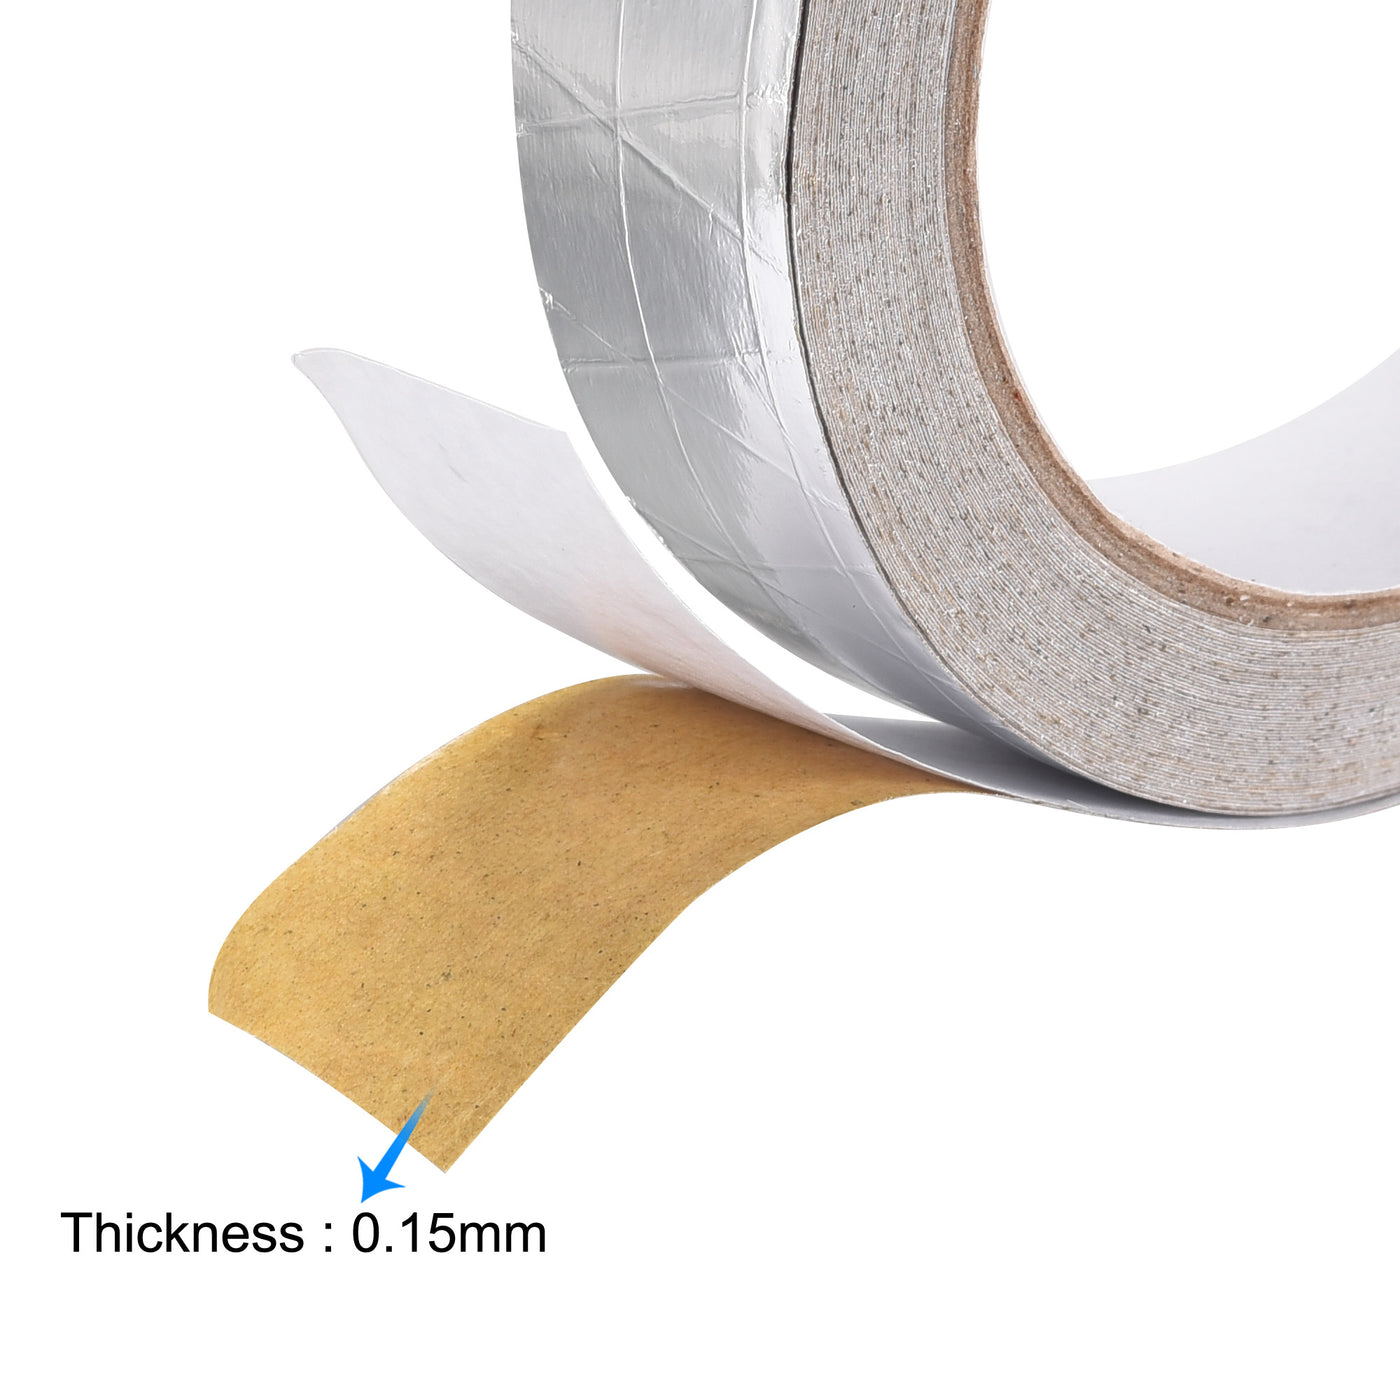 uxcell Uxcell Fiberglass Aluminum Foil Tape High Temperature Tape 25mmx20m/65ft